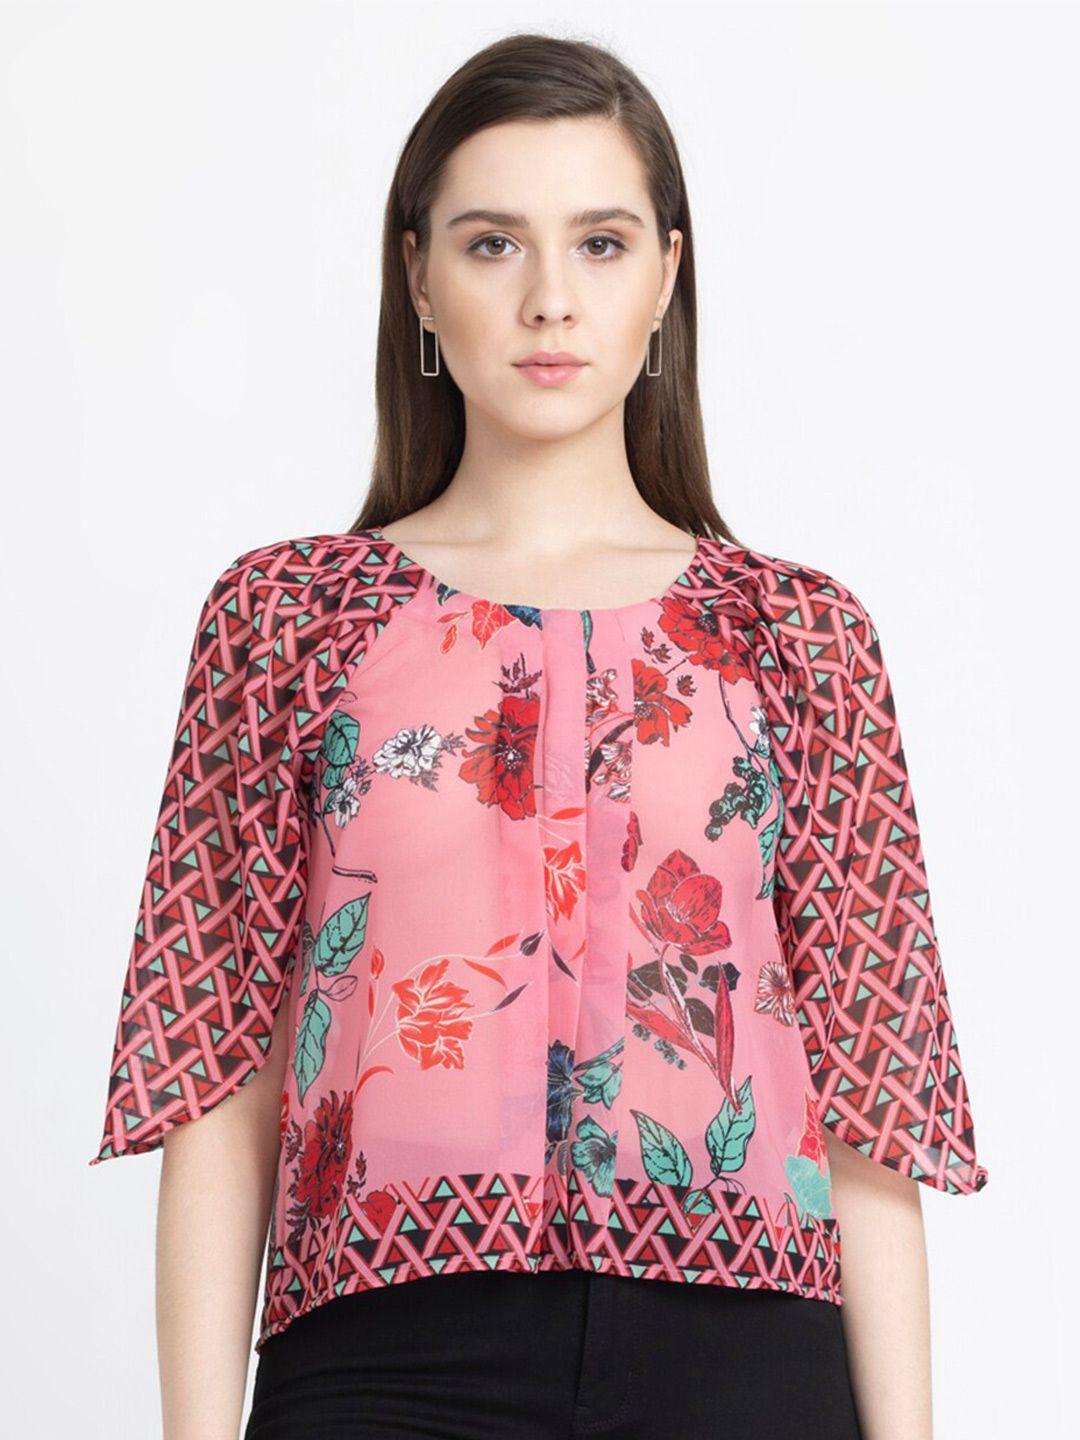 shaye floral printed raglan sleeves top